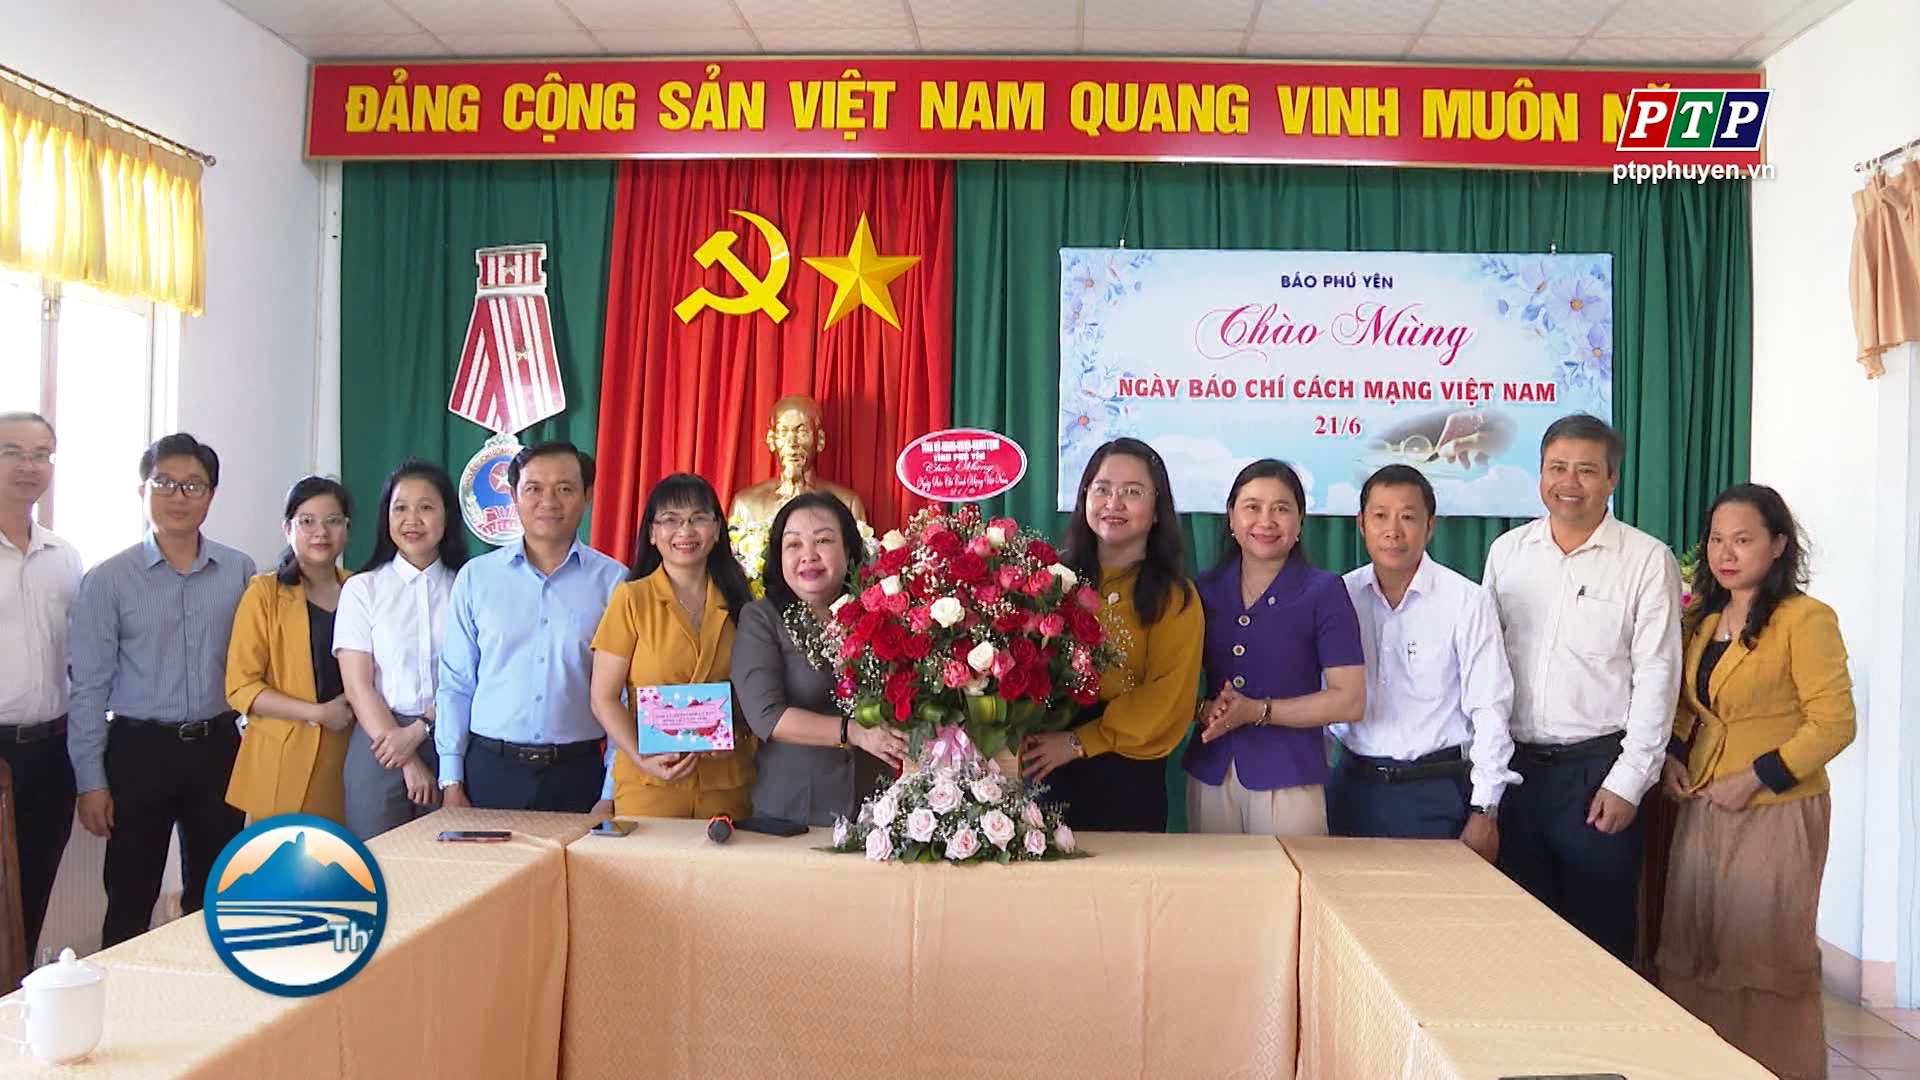 Phó Bí thư thường trực Tỉnh ủy Cao Thị Hòa An thăm, chúc mừng Ngày Báo chí cách mạng Việt Nam